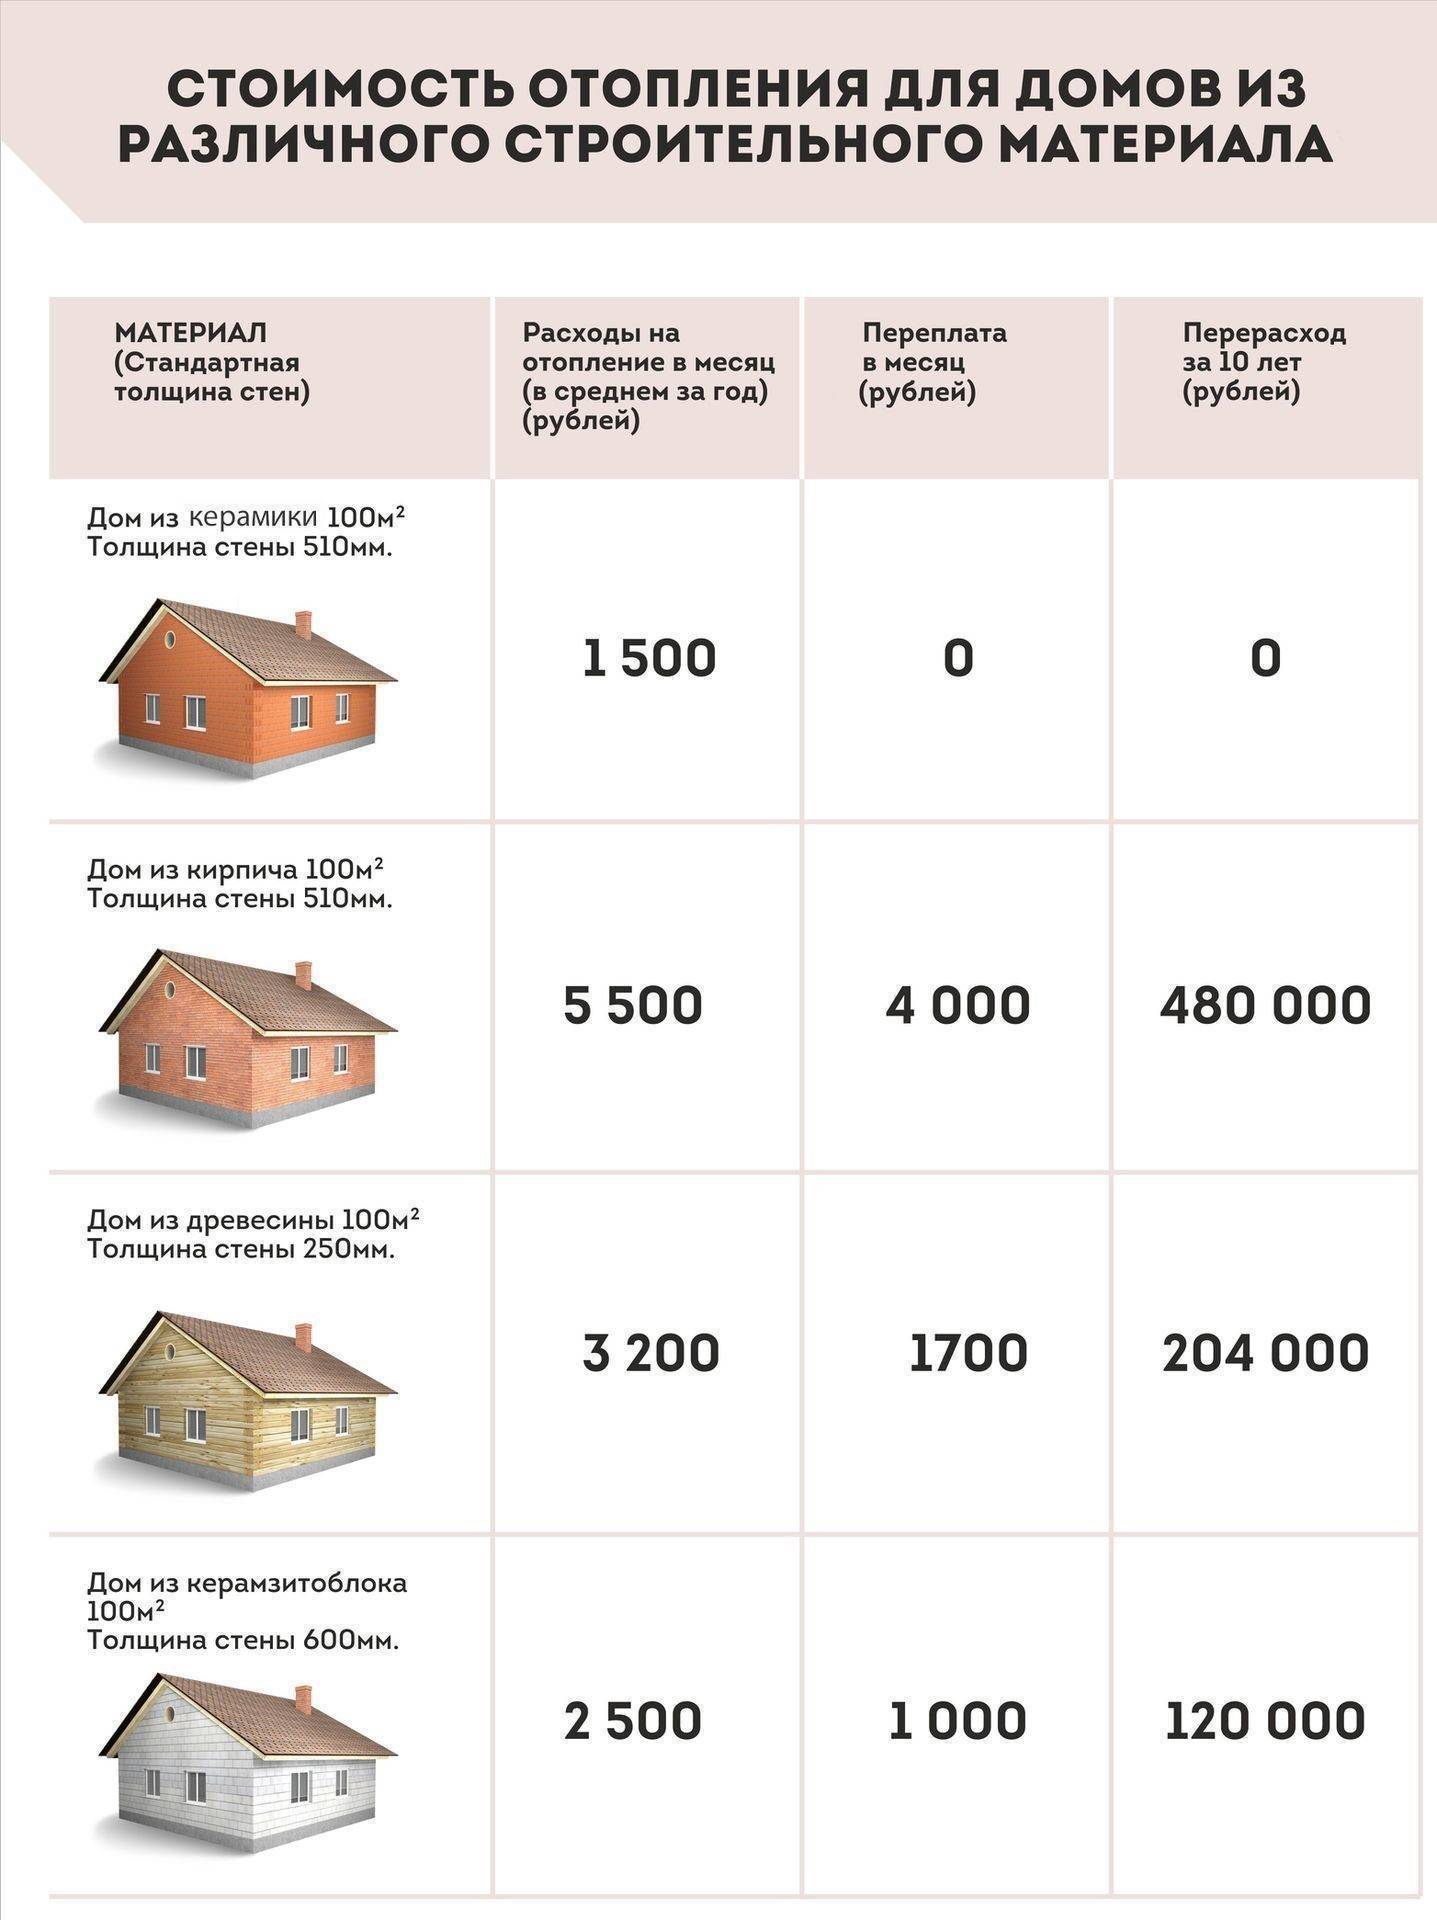 Как рассчитать стоимость заливки фундамента под дом и методы экономии - построй дом сам